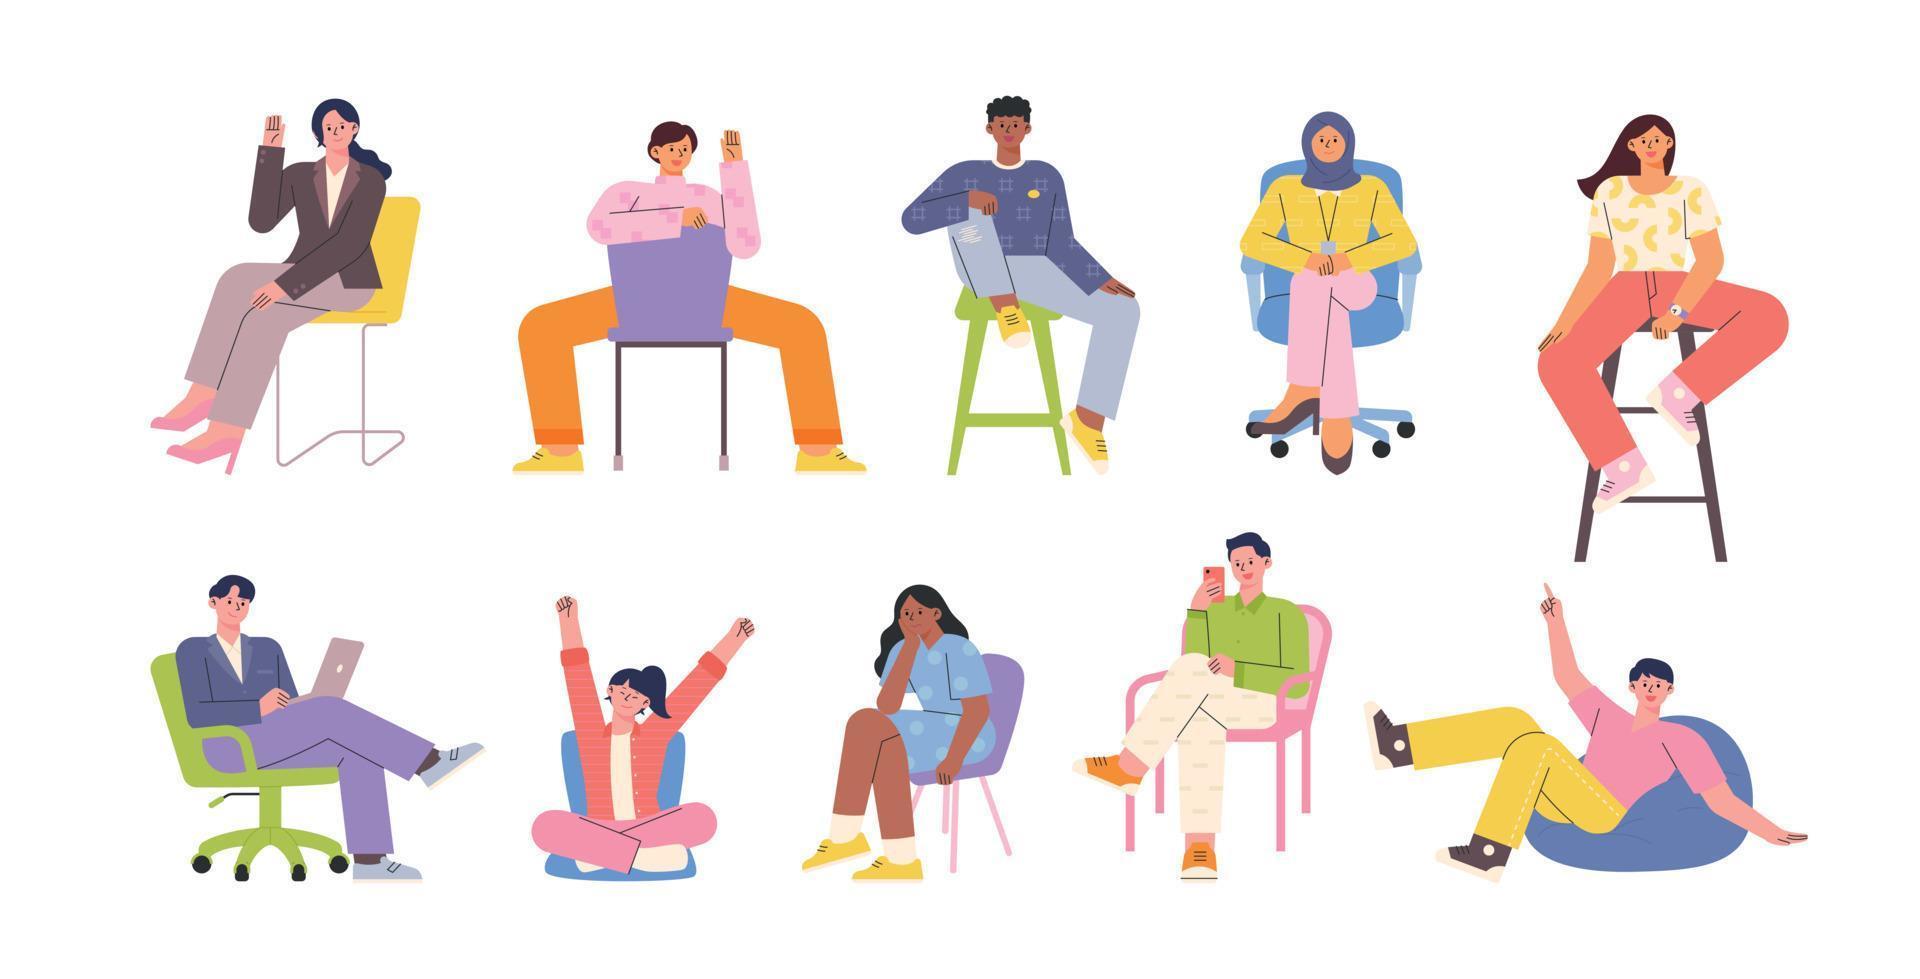 un insieme di persone diverse, sedie diverse, pose diverse. illustrazione vettoriale in stile design piatto.